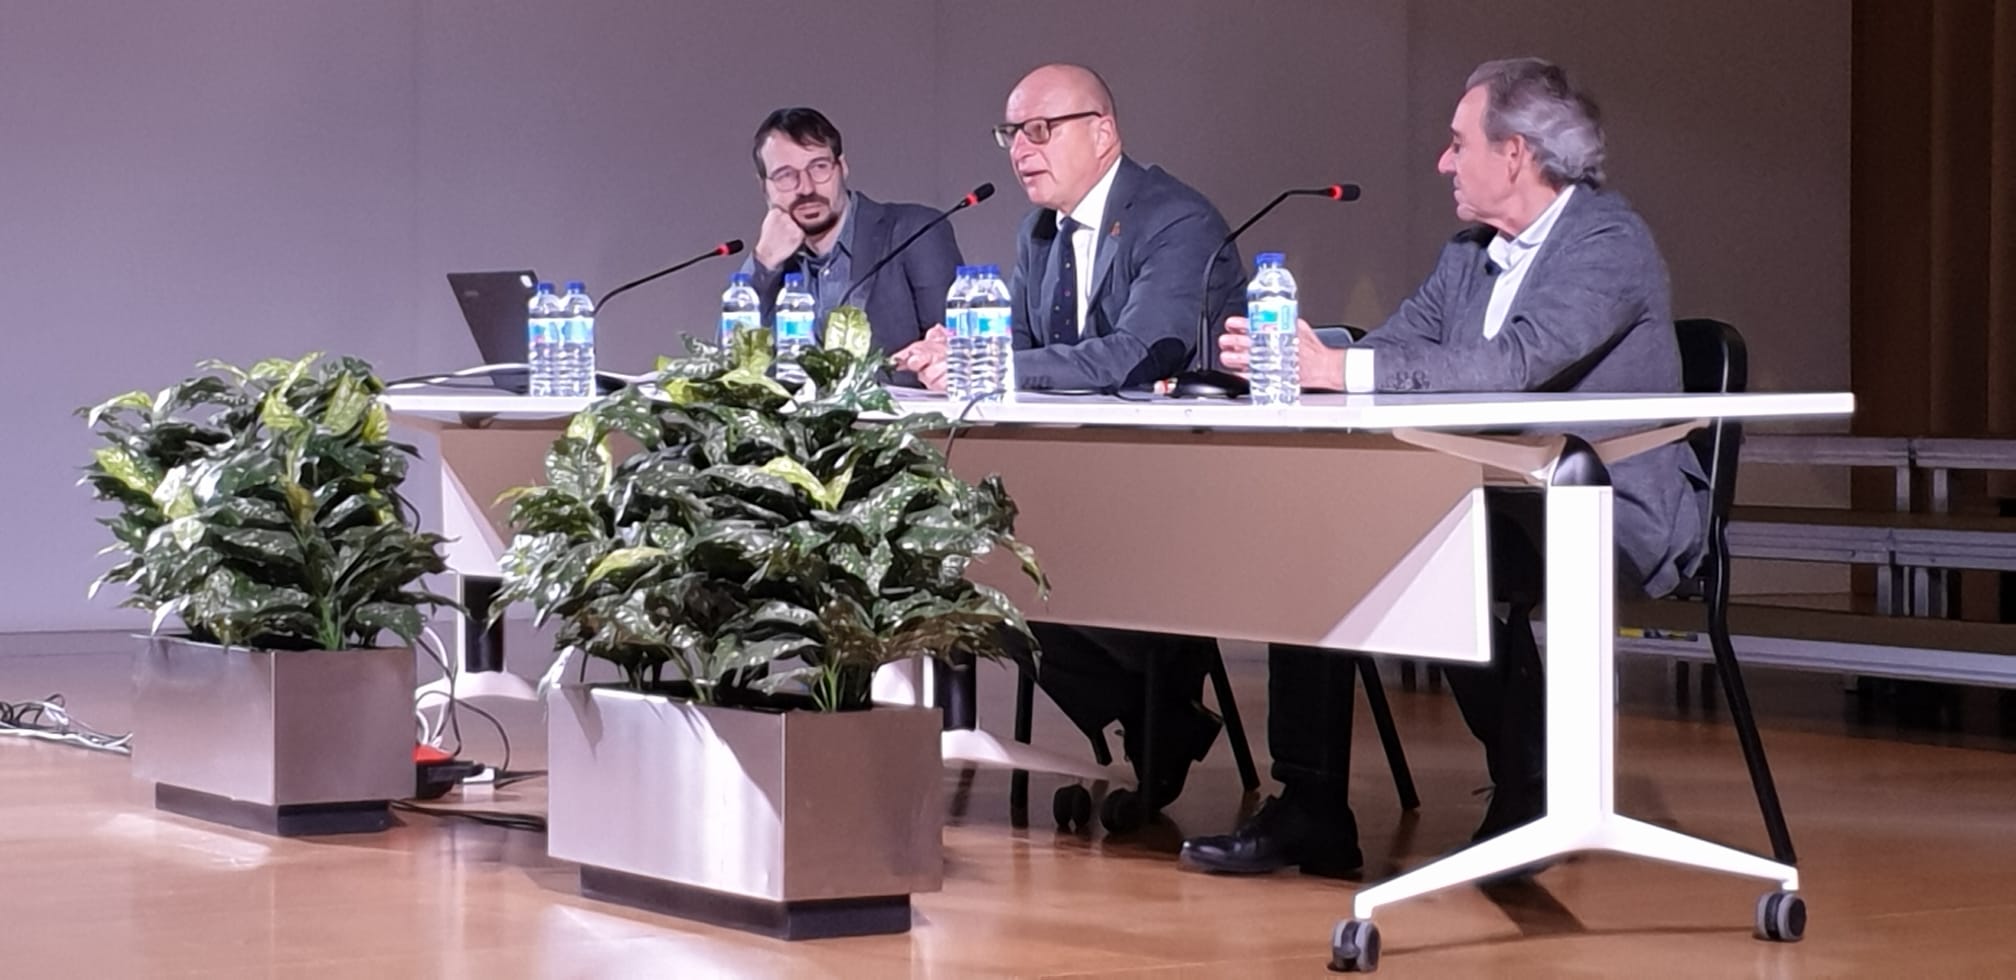 El consejero Gimeno destaca ante la asamblea española de ACESEA que la futura Ley de Enseñanzas Artísticas saldará una “deuda histórica” con el sector